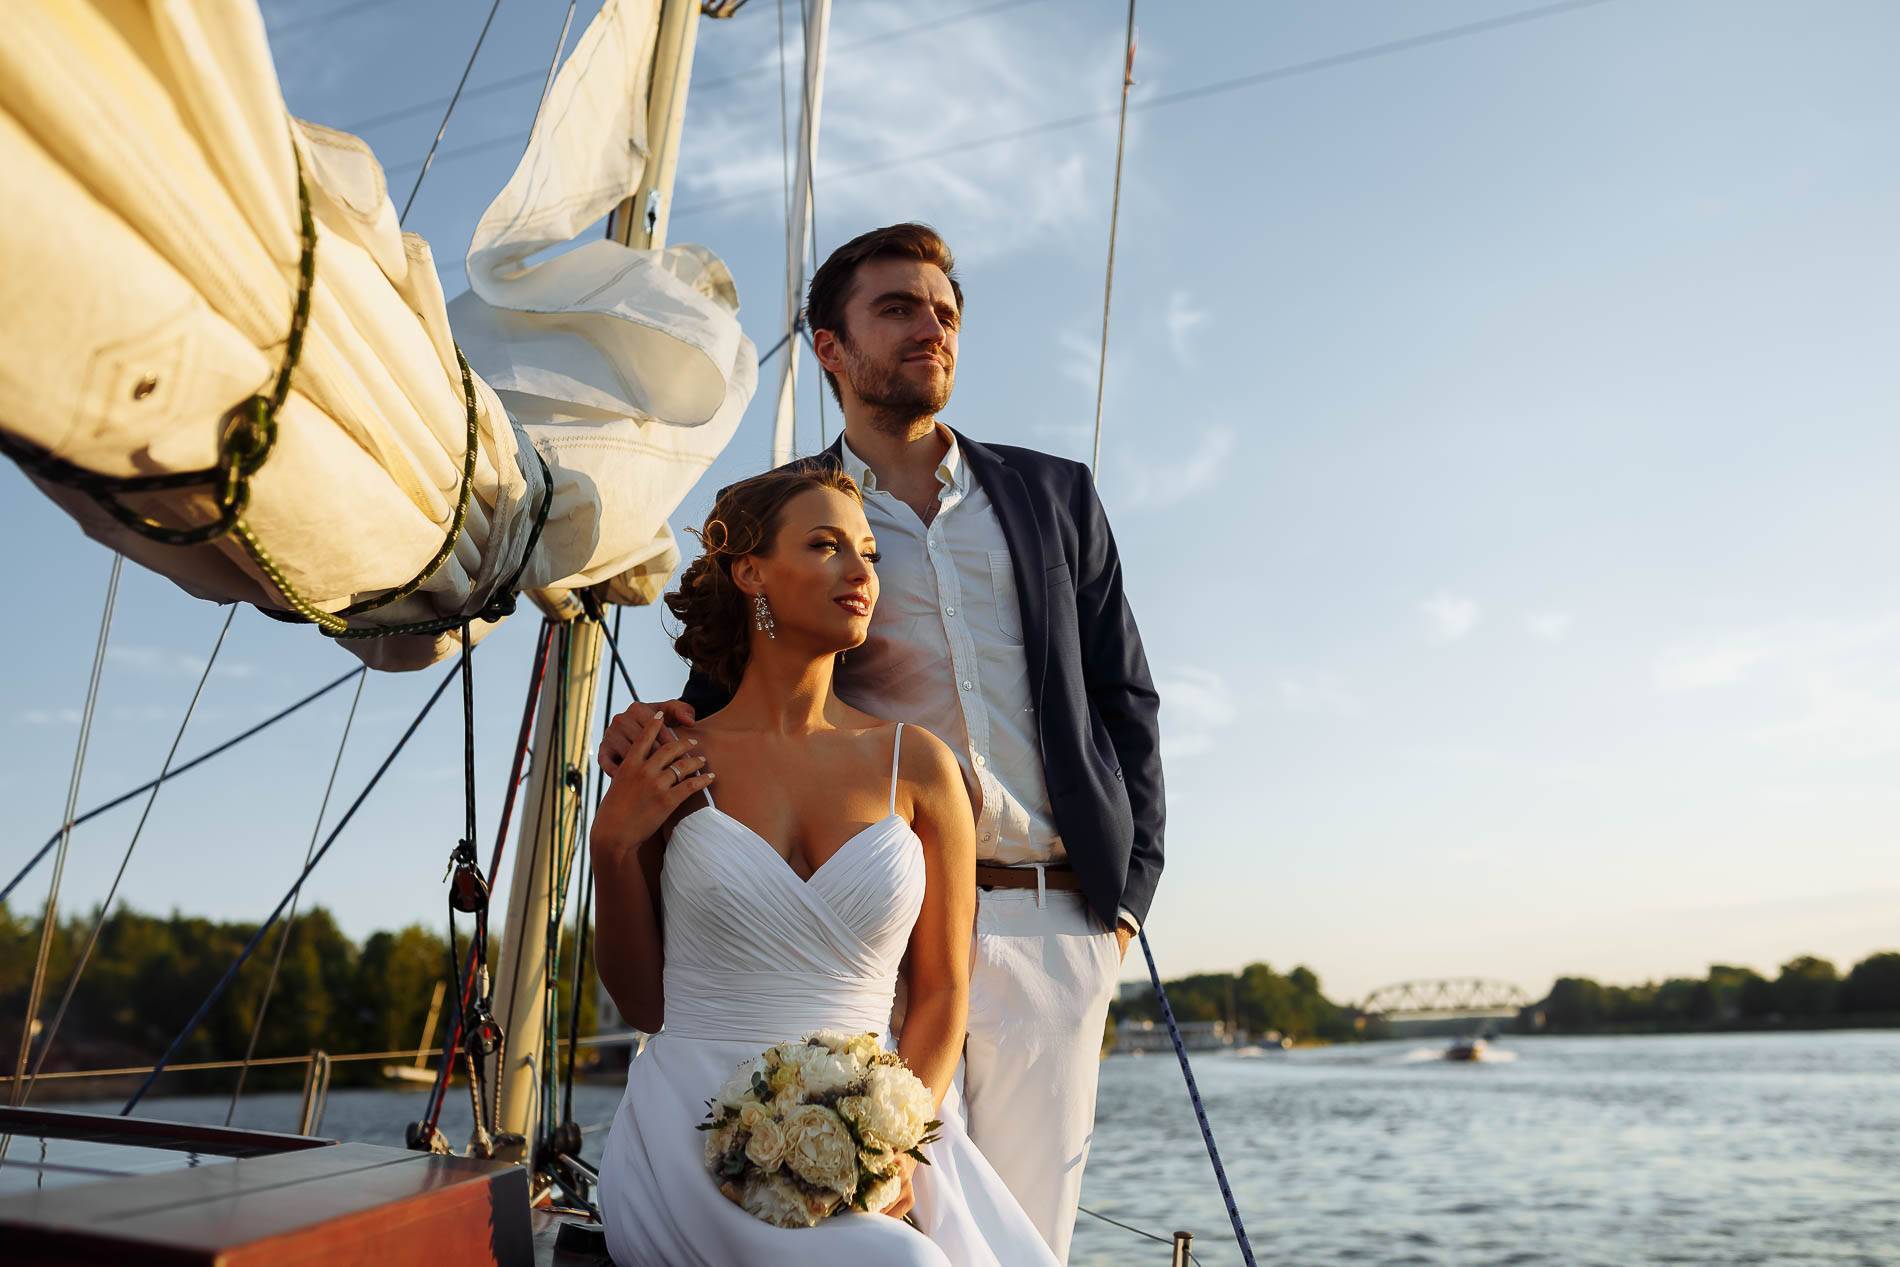 Отправиться в свадебное путешествие! 5 причин сделать это на яхте!